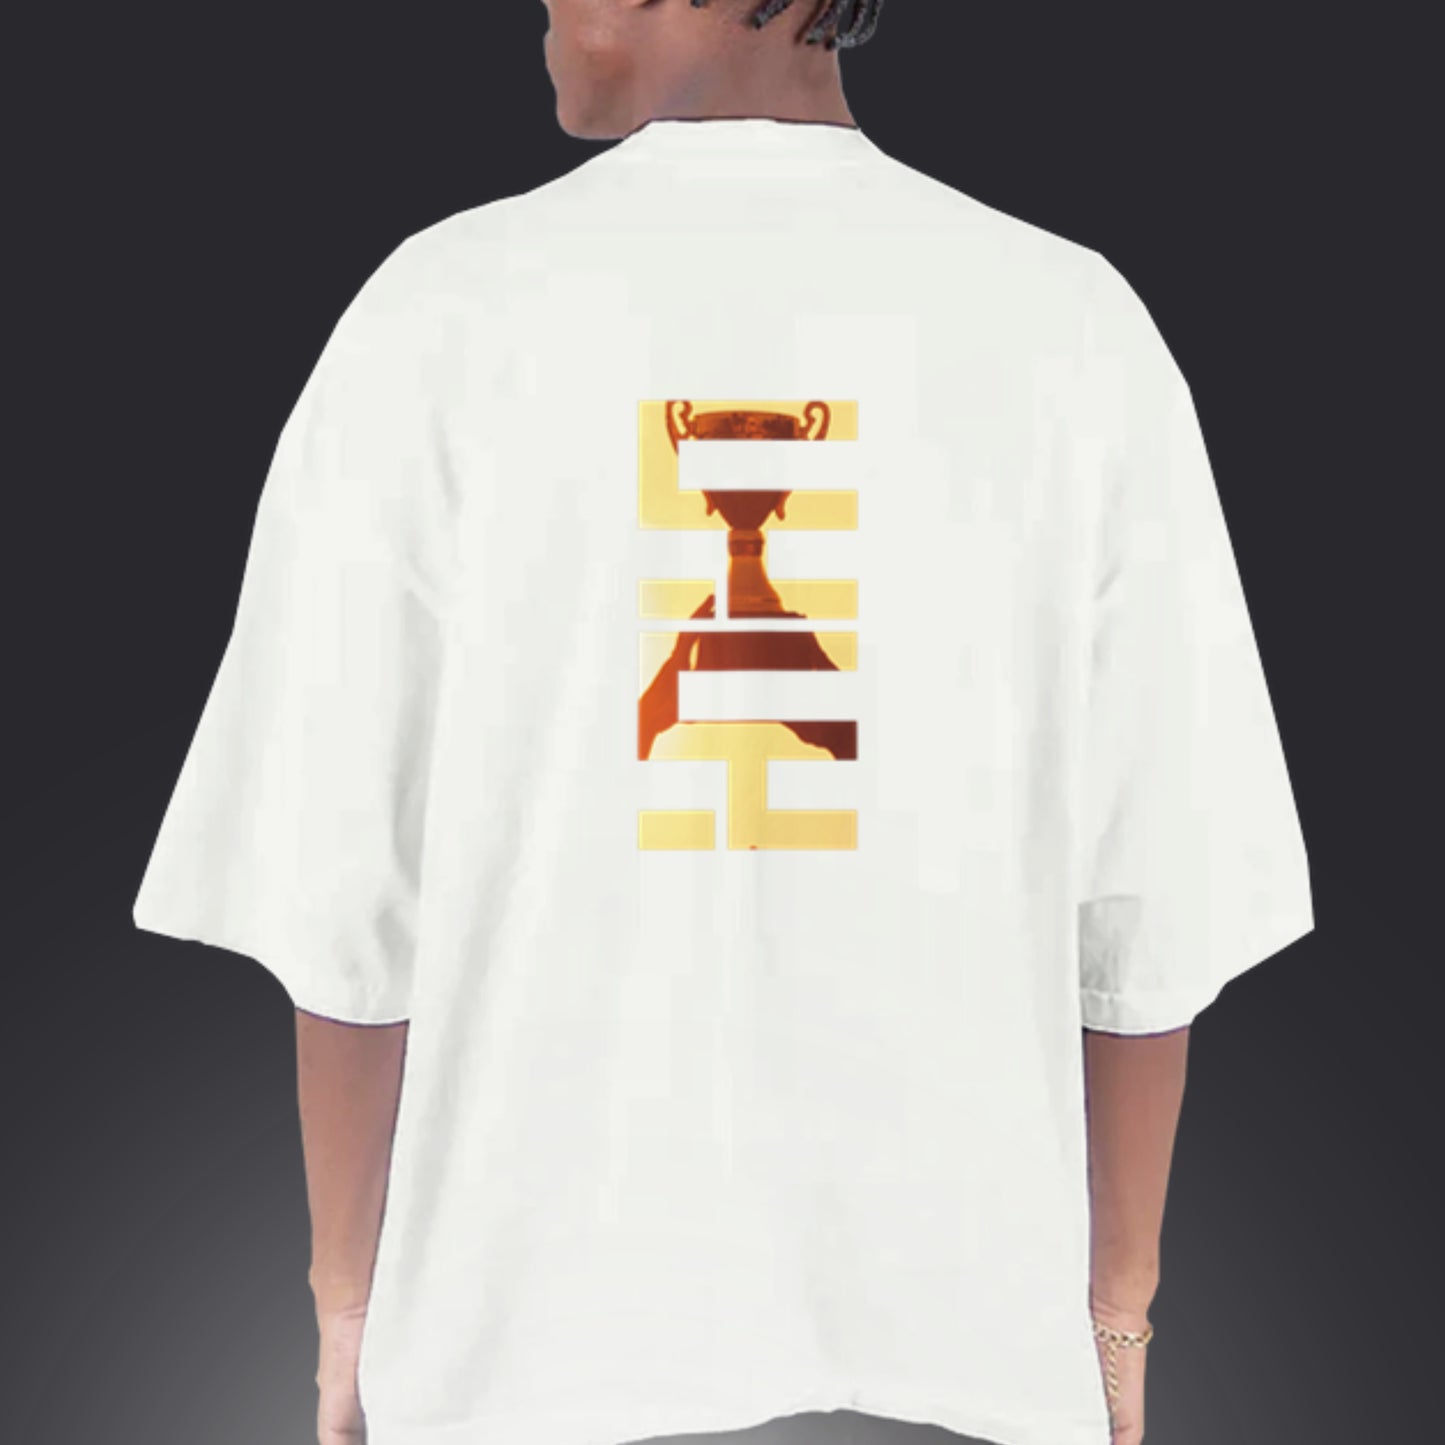 Motive (Custom T-Shirt)